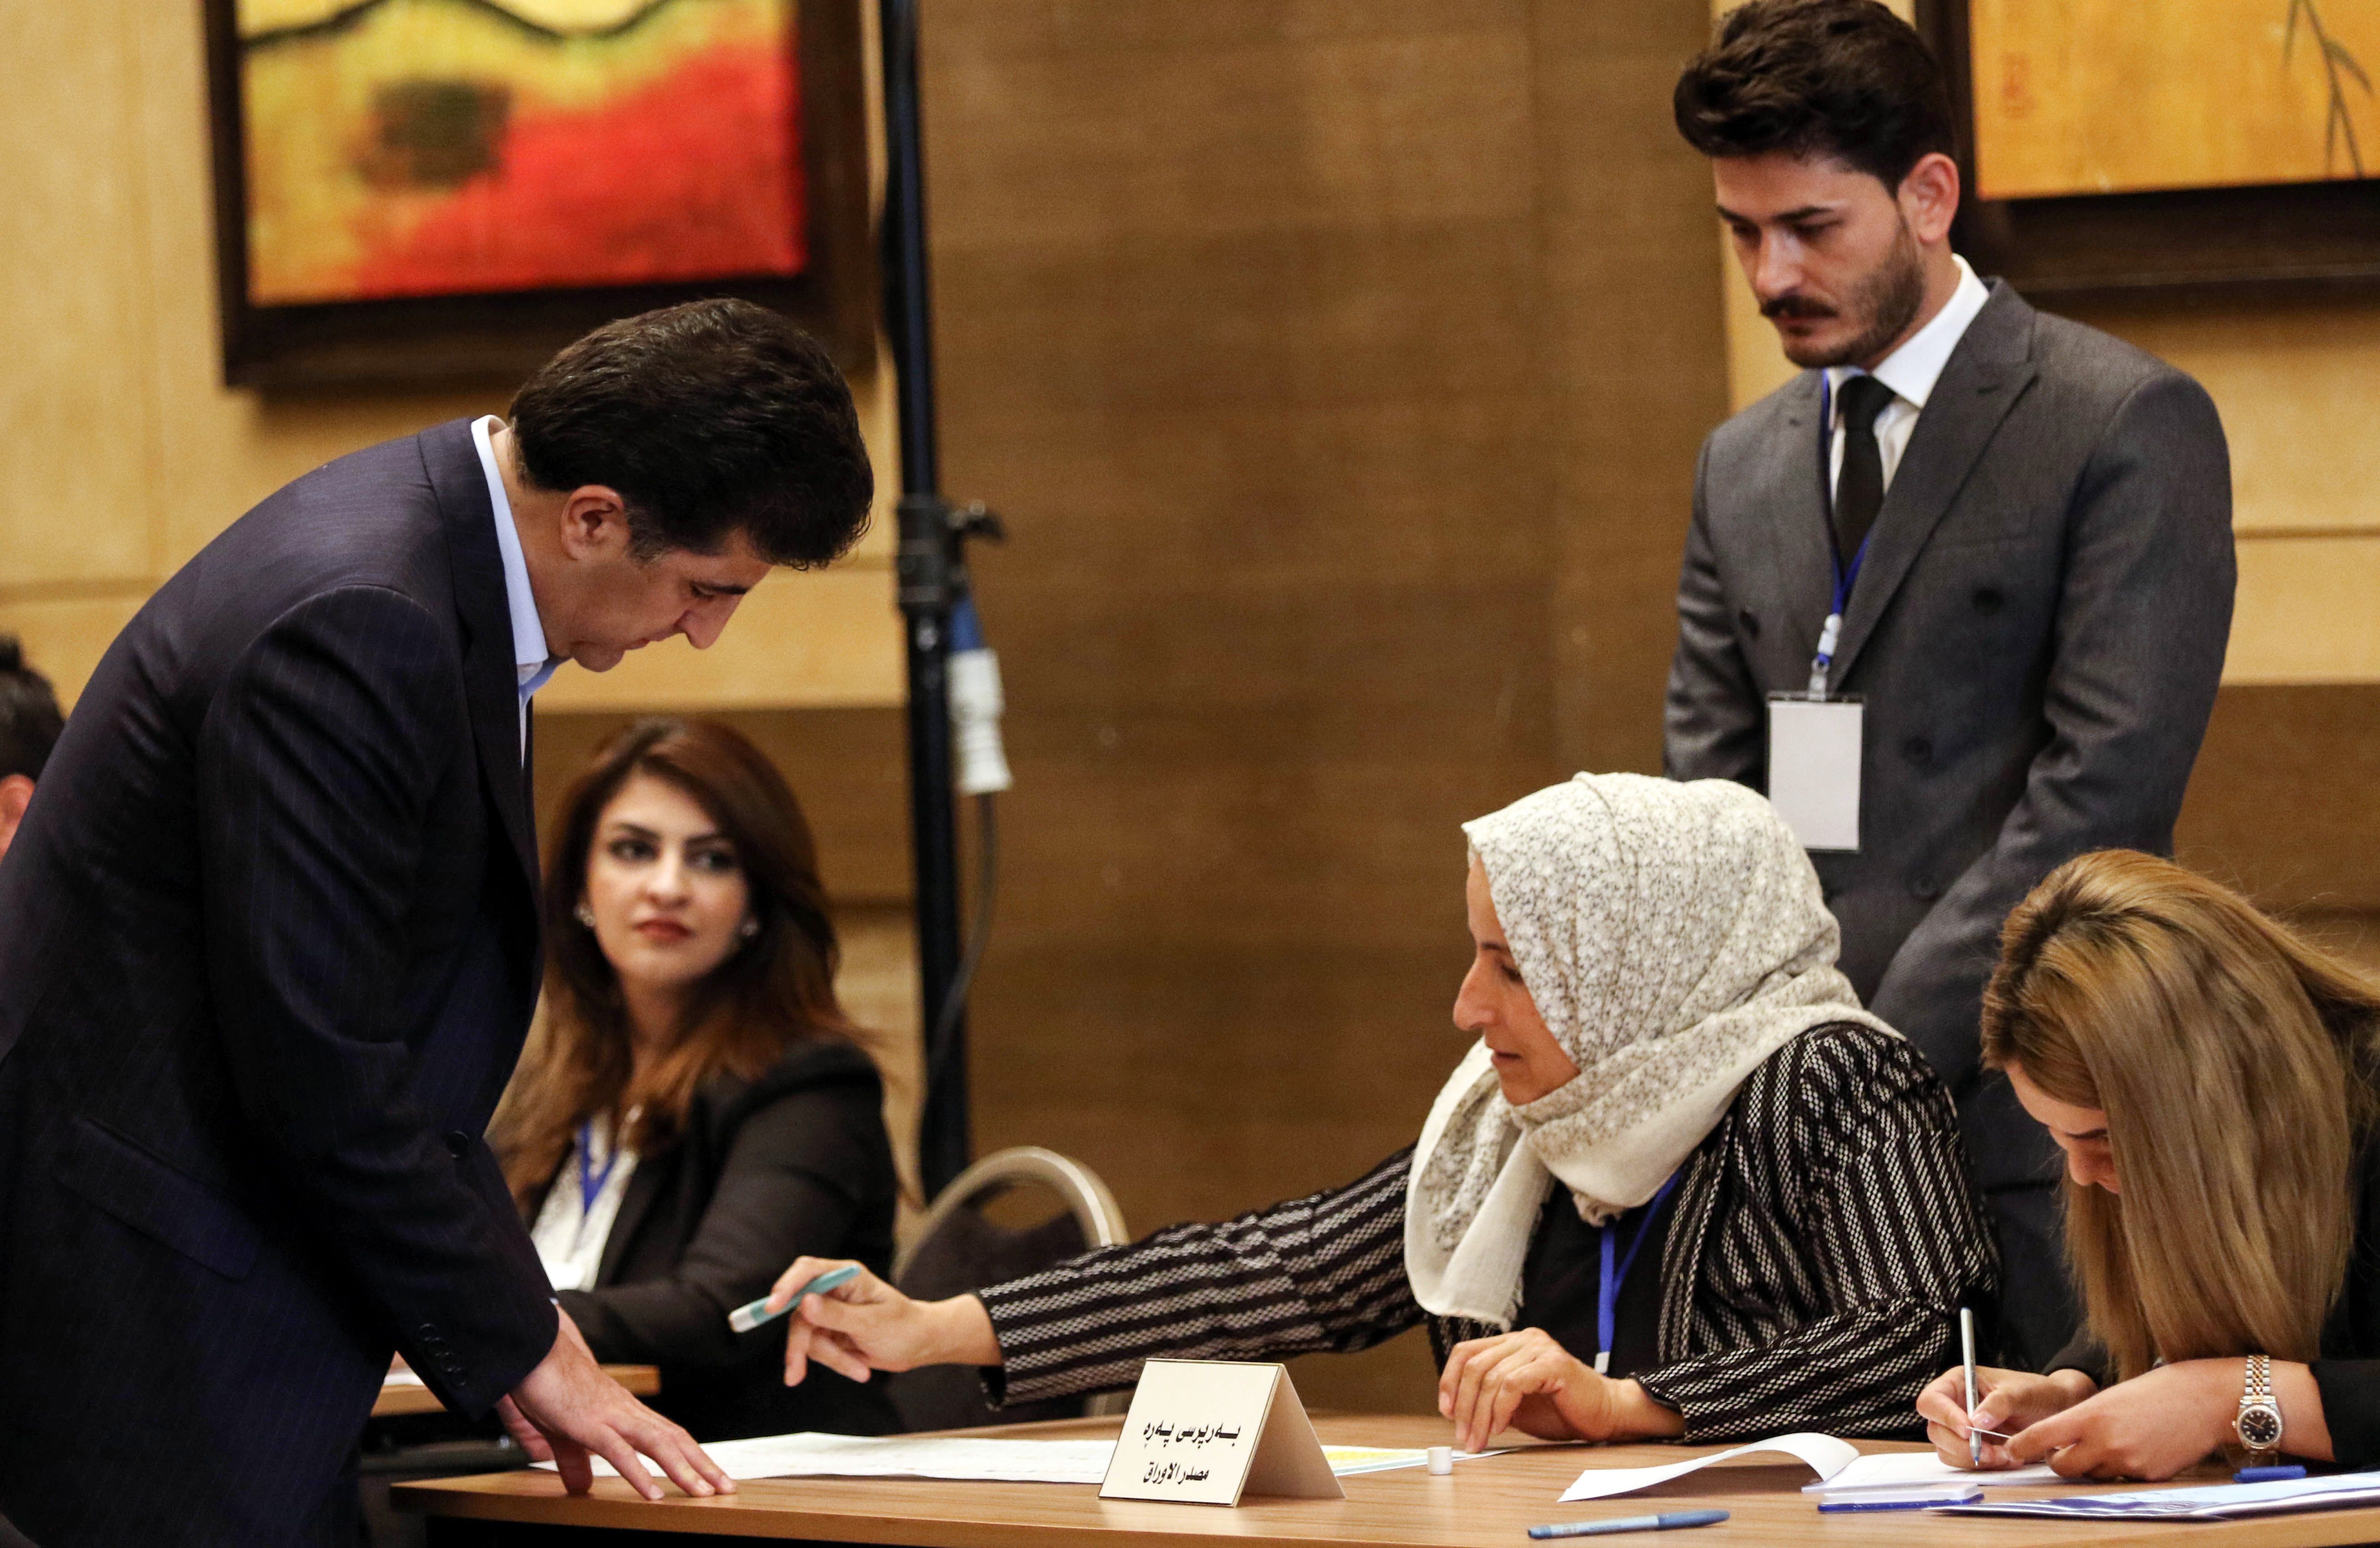  مشاركة رئيس إقليم كردستان فى الانتخابات التشريعية بالعراق 